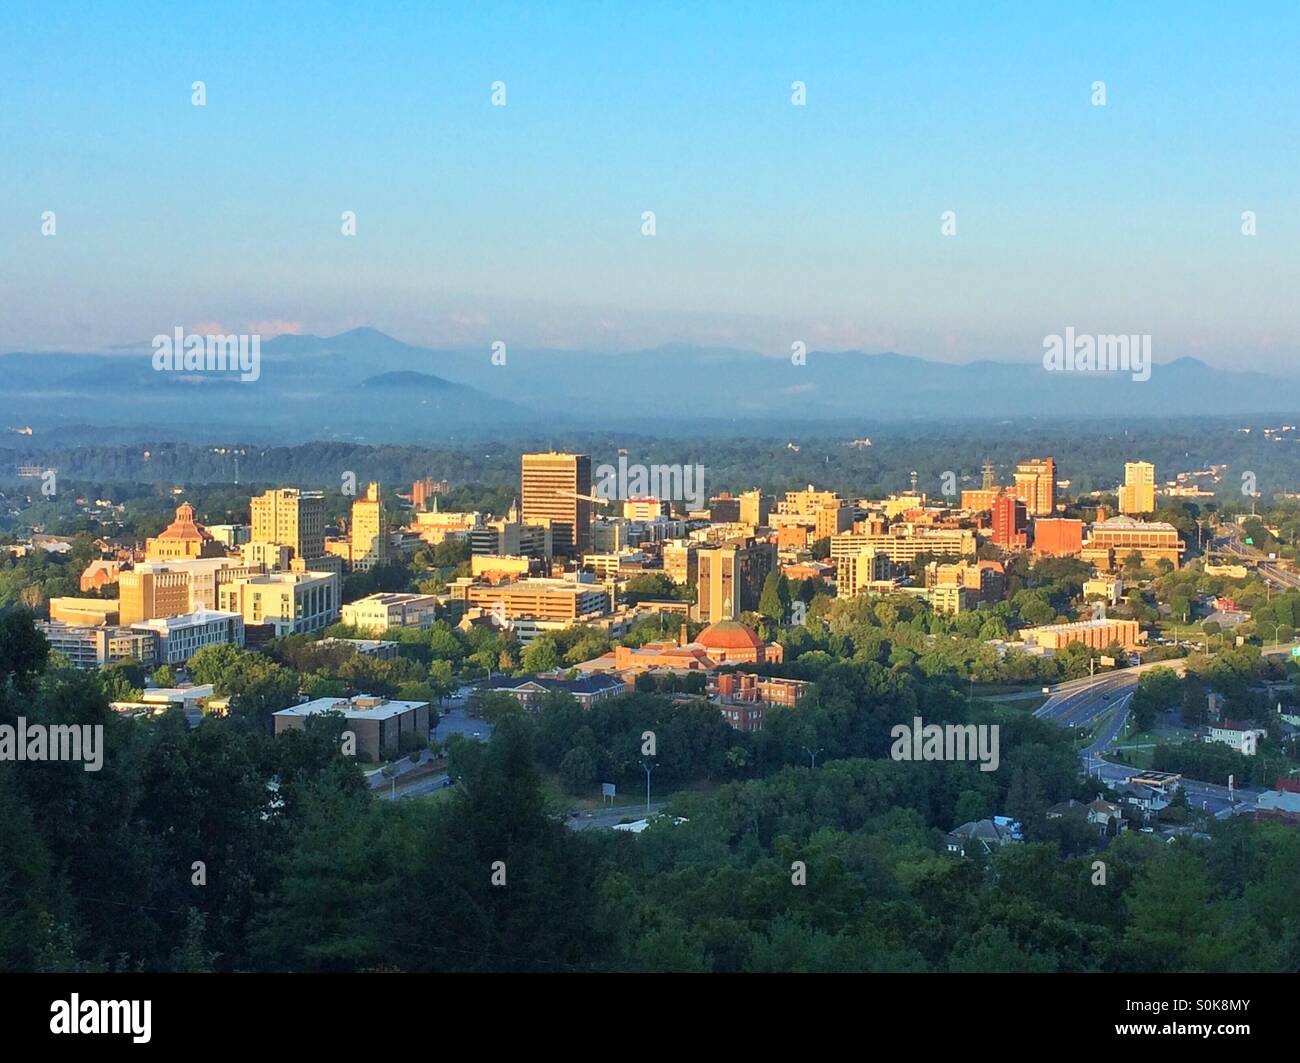 Amanecer ilumina la ciudad de Asheville, Carolina del Norte, enclavado en las montañas Blue Ridge. Foto de stock